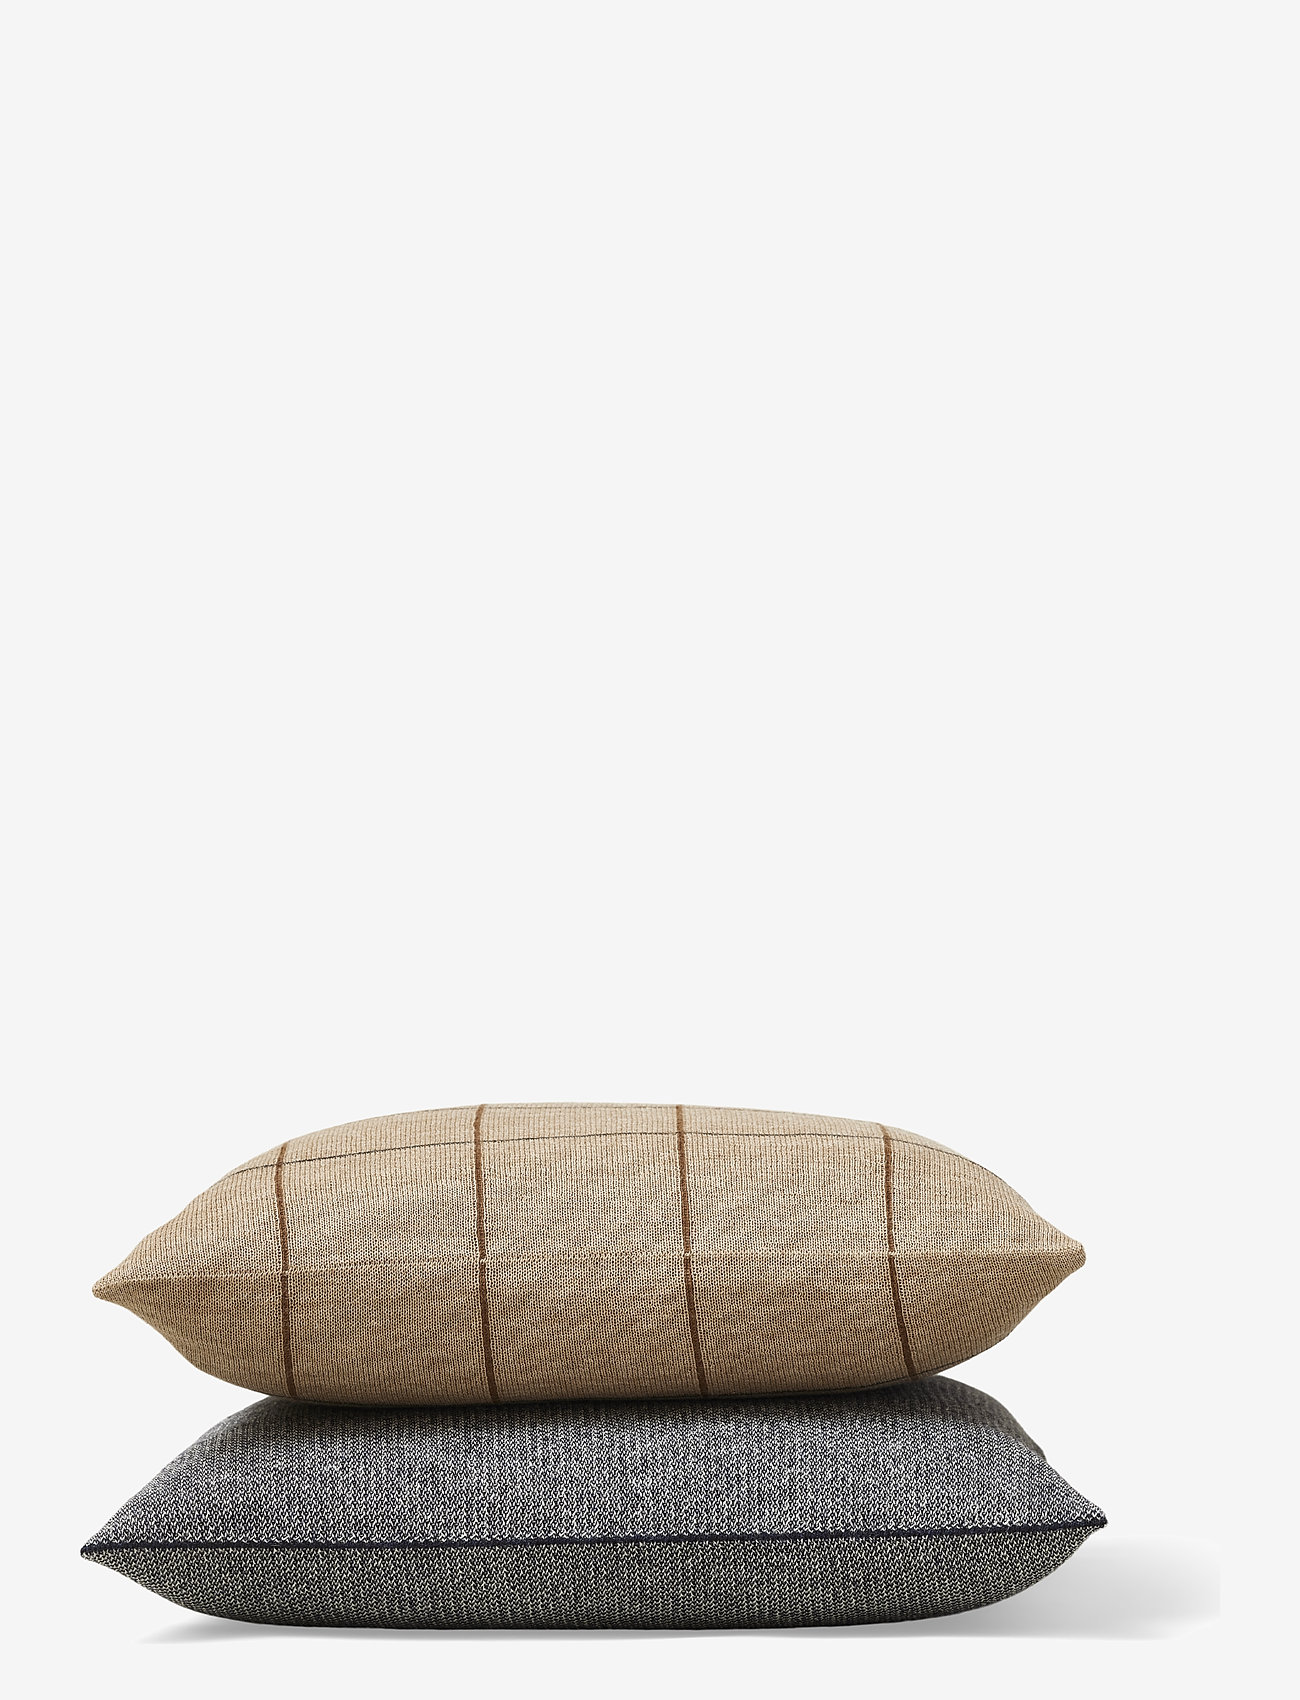 Form & Refine - Aymara Cushion - cushions - cream/off white, light grey and dark grey - 1